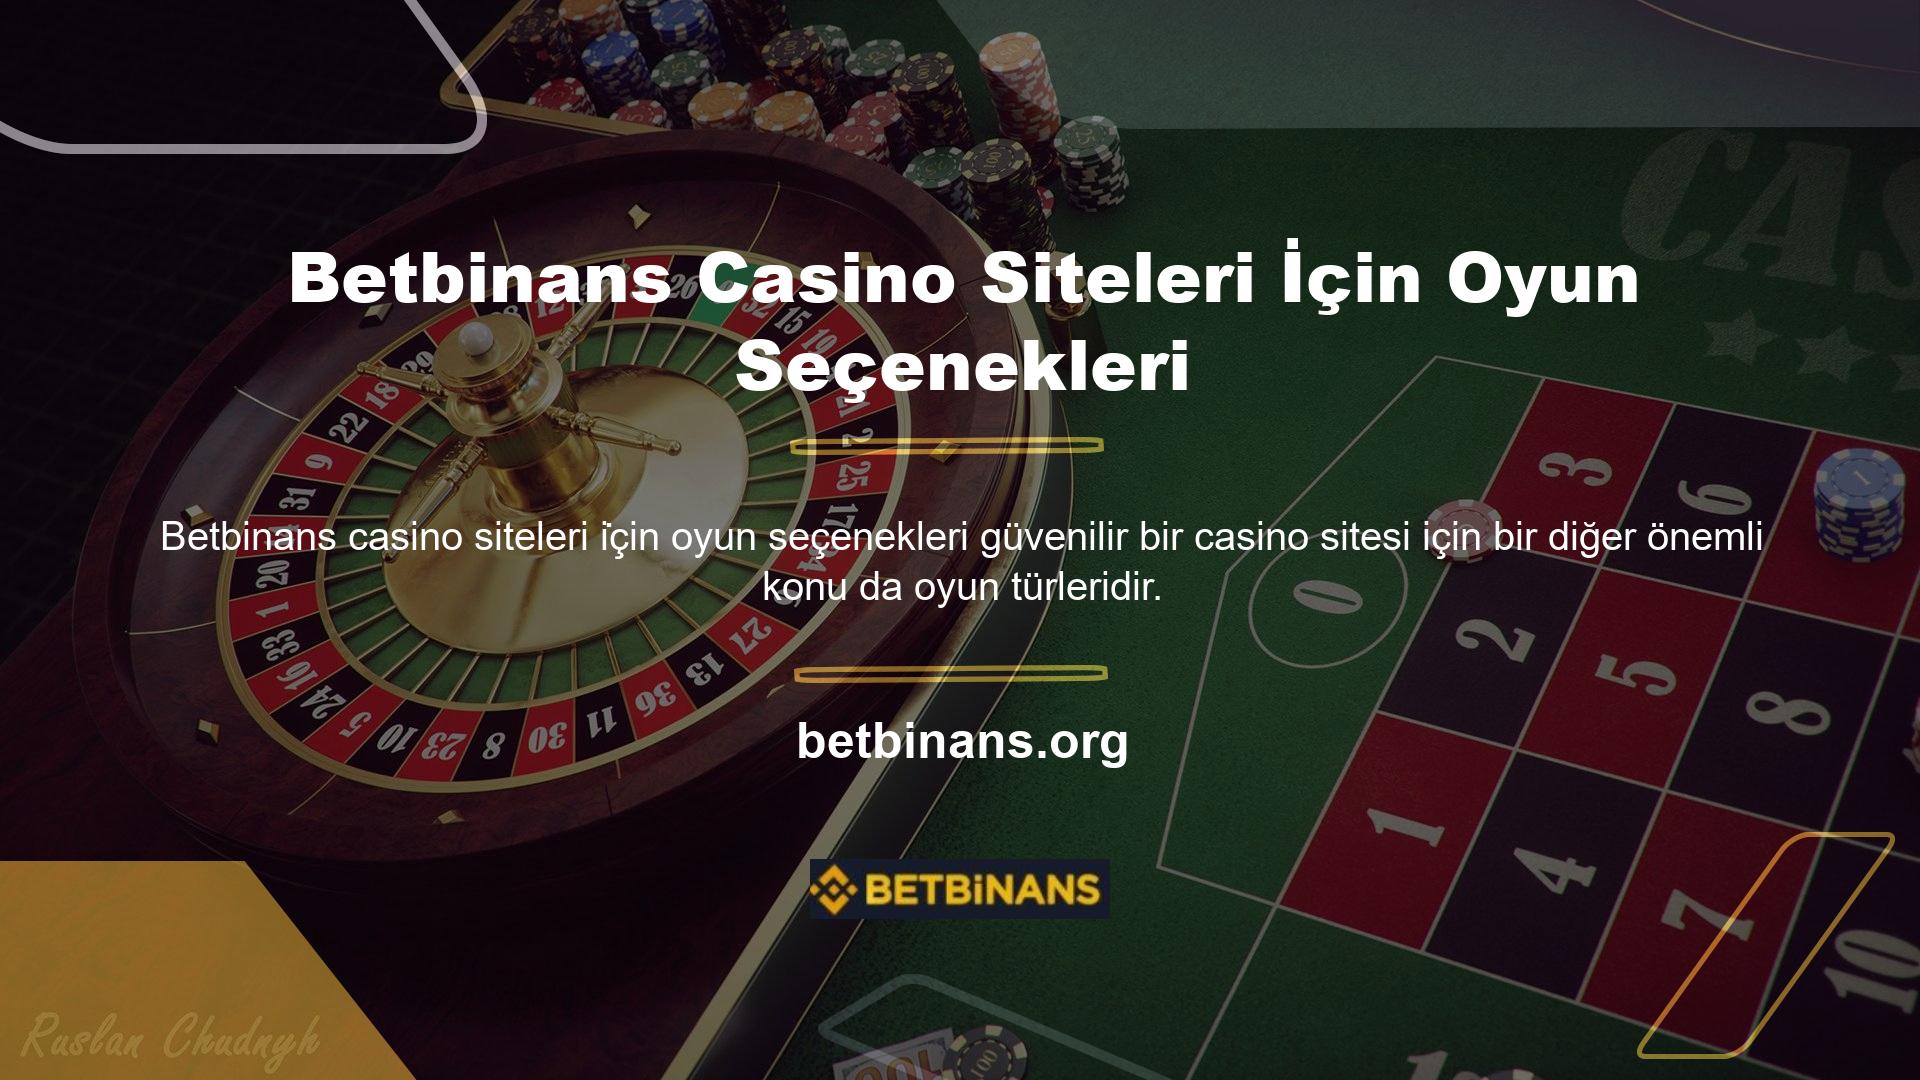 Casino siteleri, kullanıcılara sitelerinin yüksek kalitede ve başarılı olduğunu kanıtlamak için oyun seçeneklerini kullanabilir